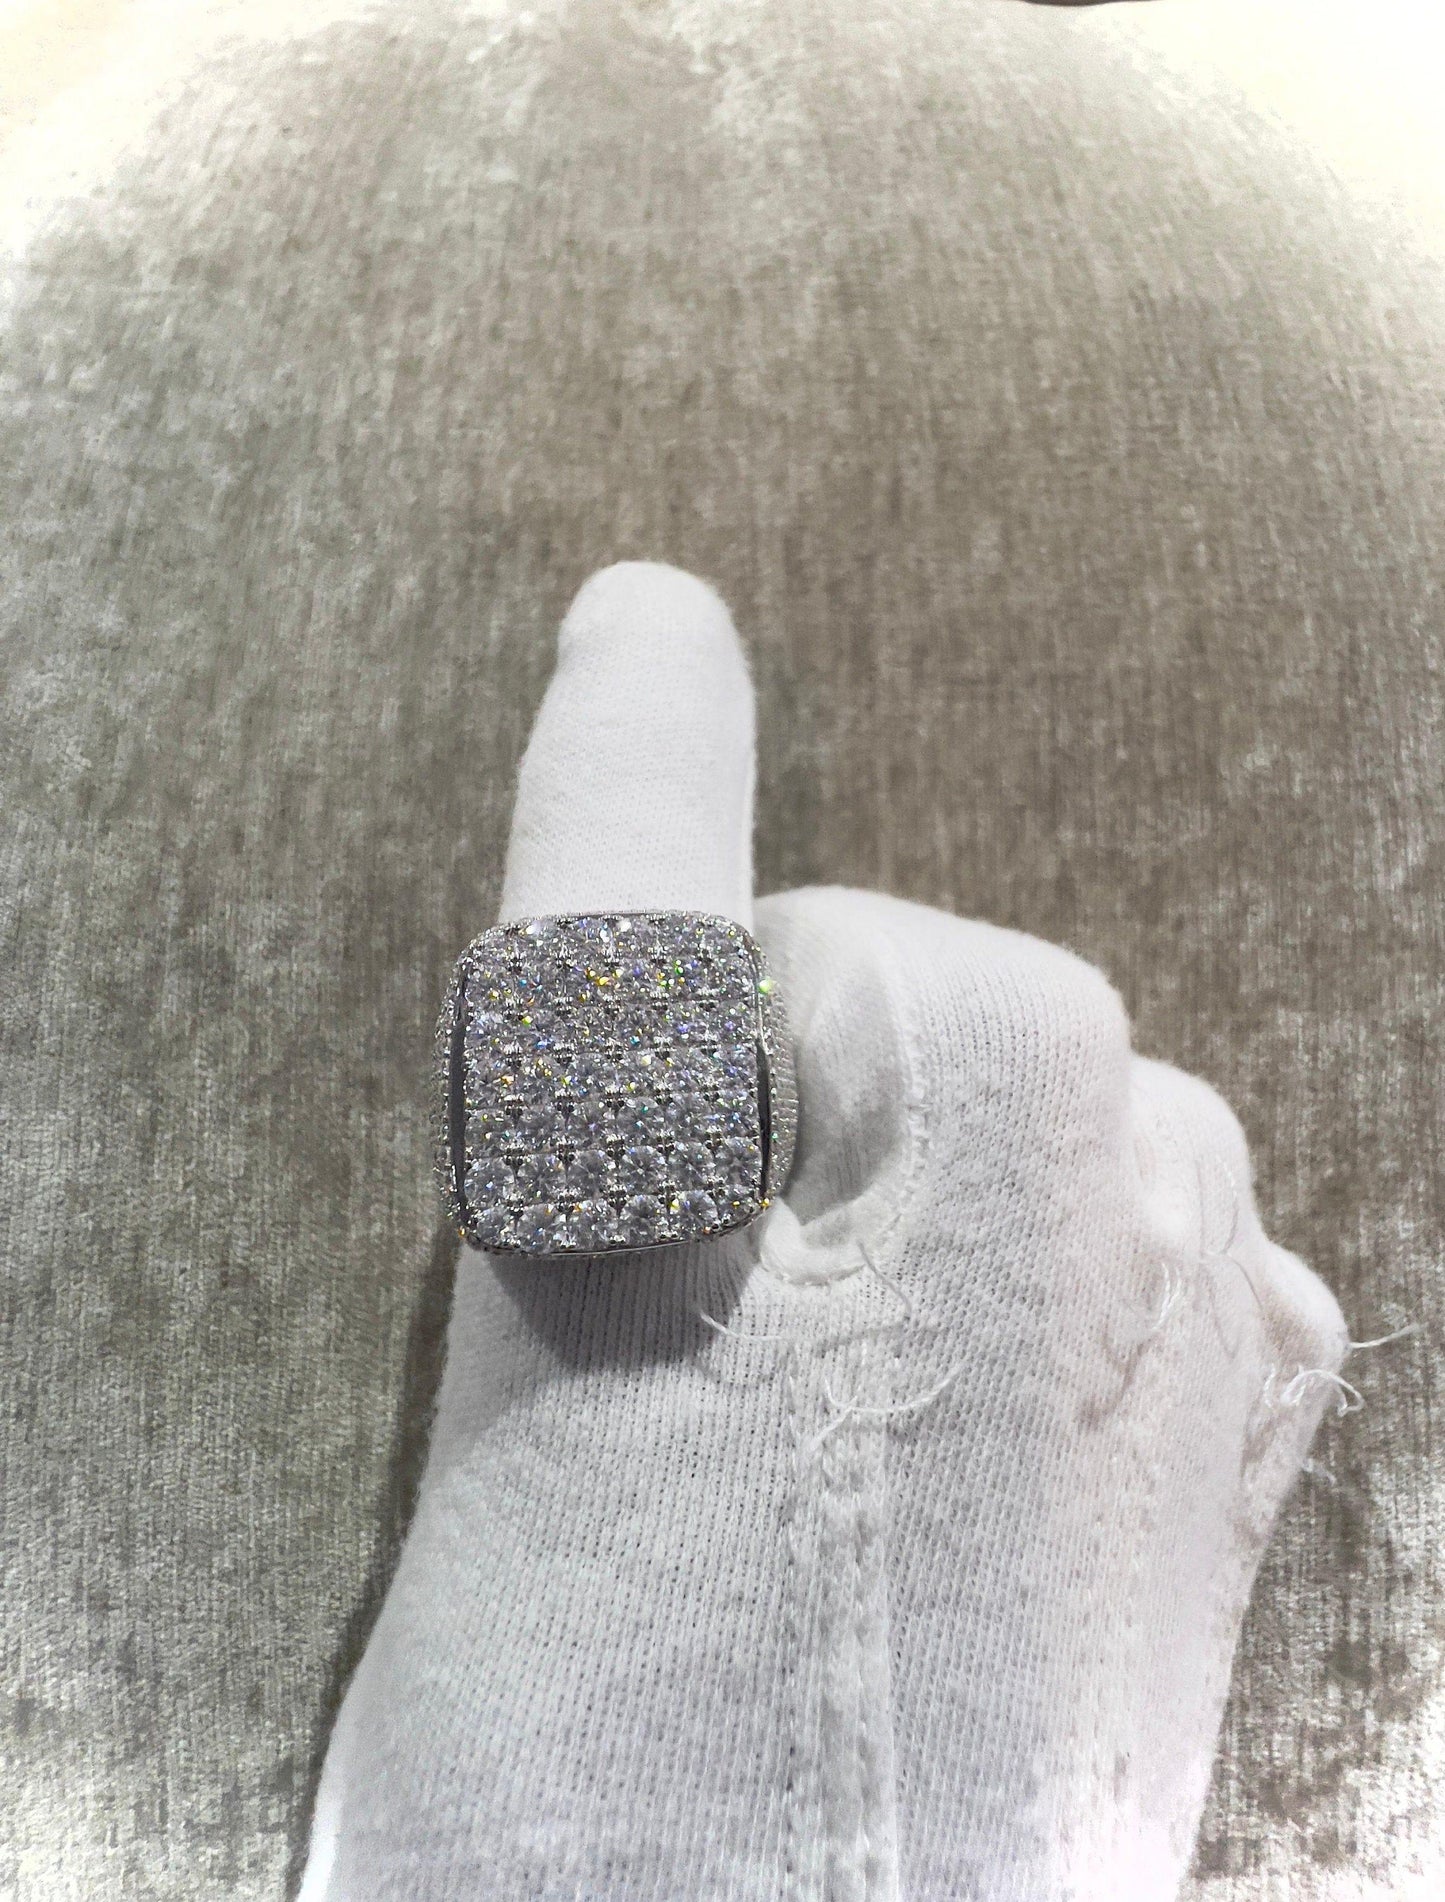 Men's 925 silver fully iced out Moissanite 10.96 ct VVS1 quality moissanite ring - JBR Jeweler